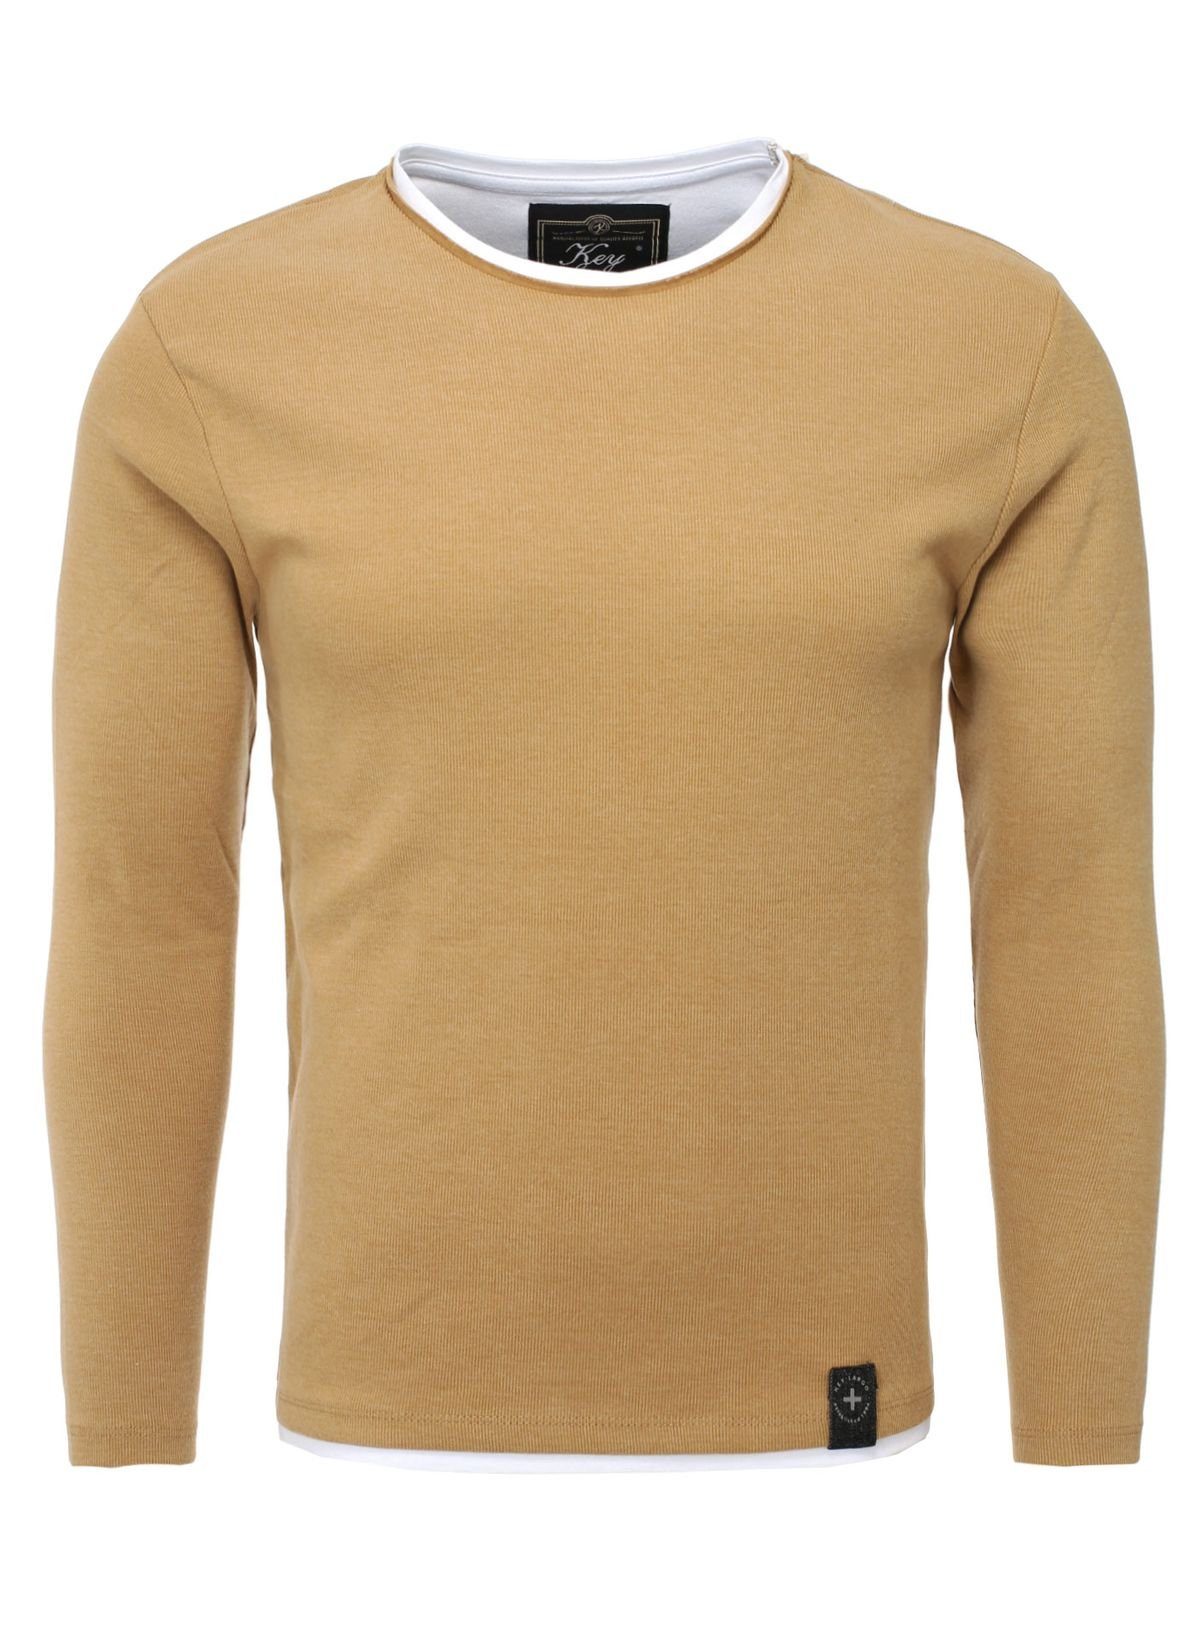 Strickpullover Sweatshirt Largo Key double Look Sarasota für Feinstrick MSW00064 2in1 Herren Camel